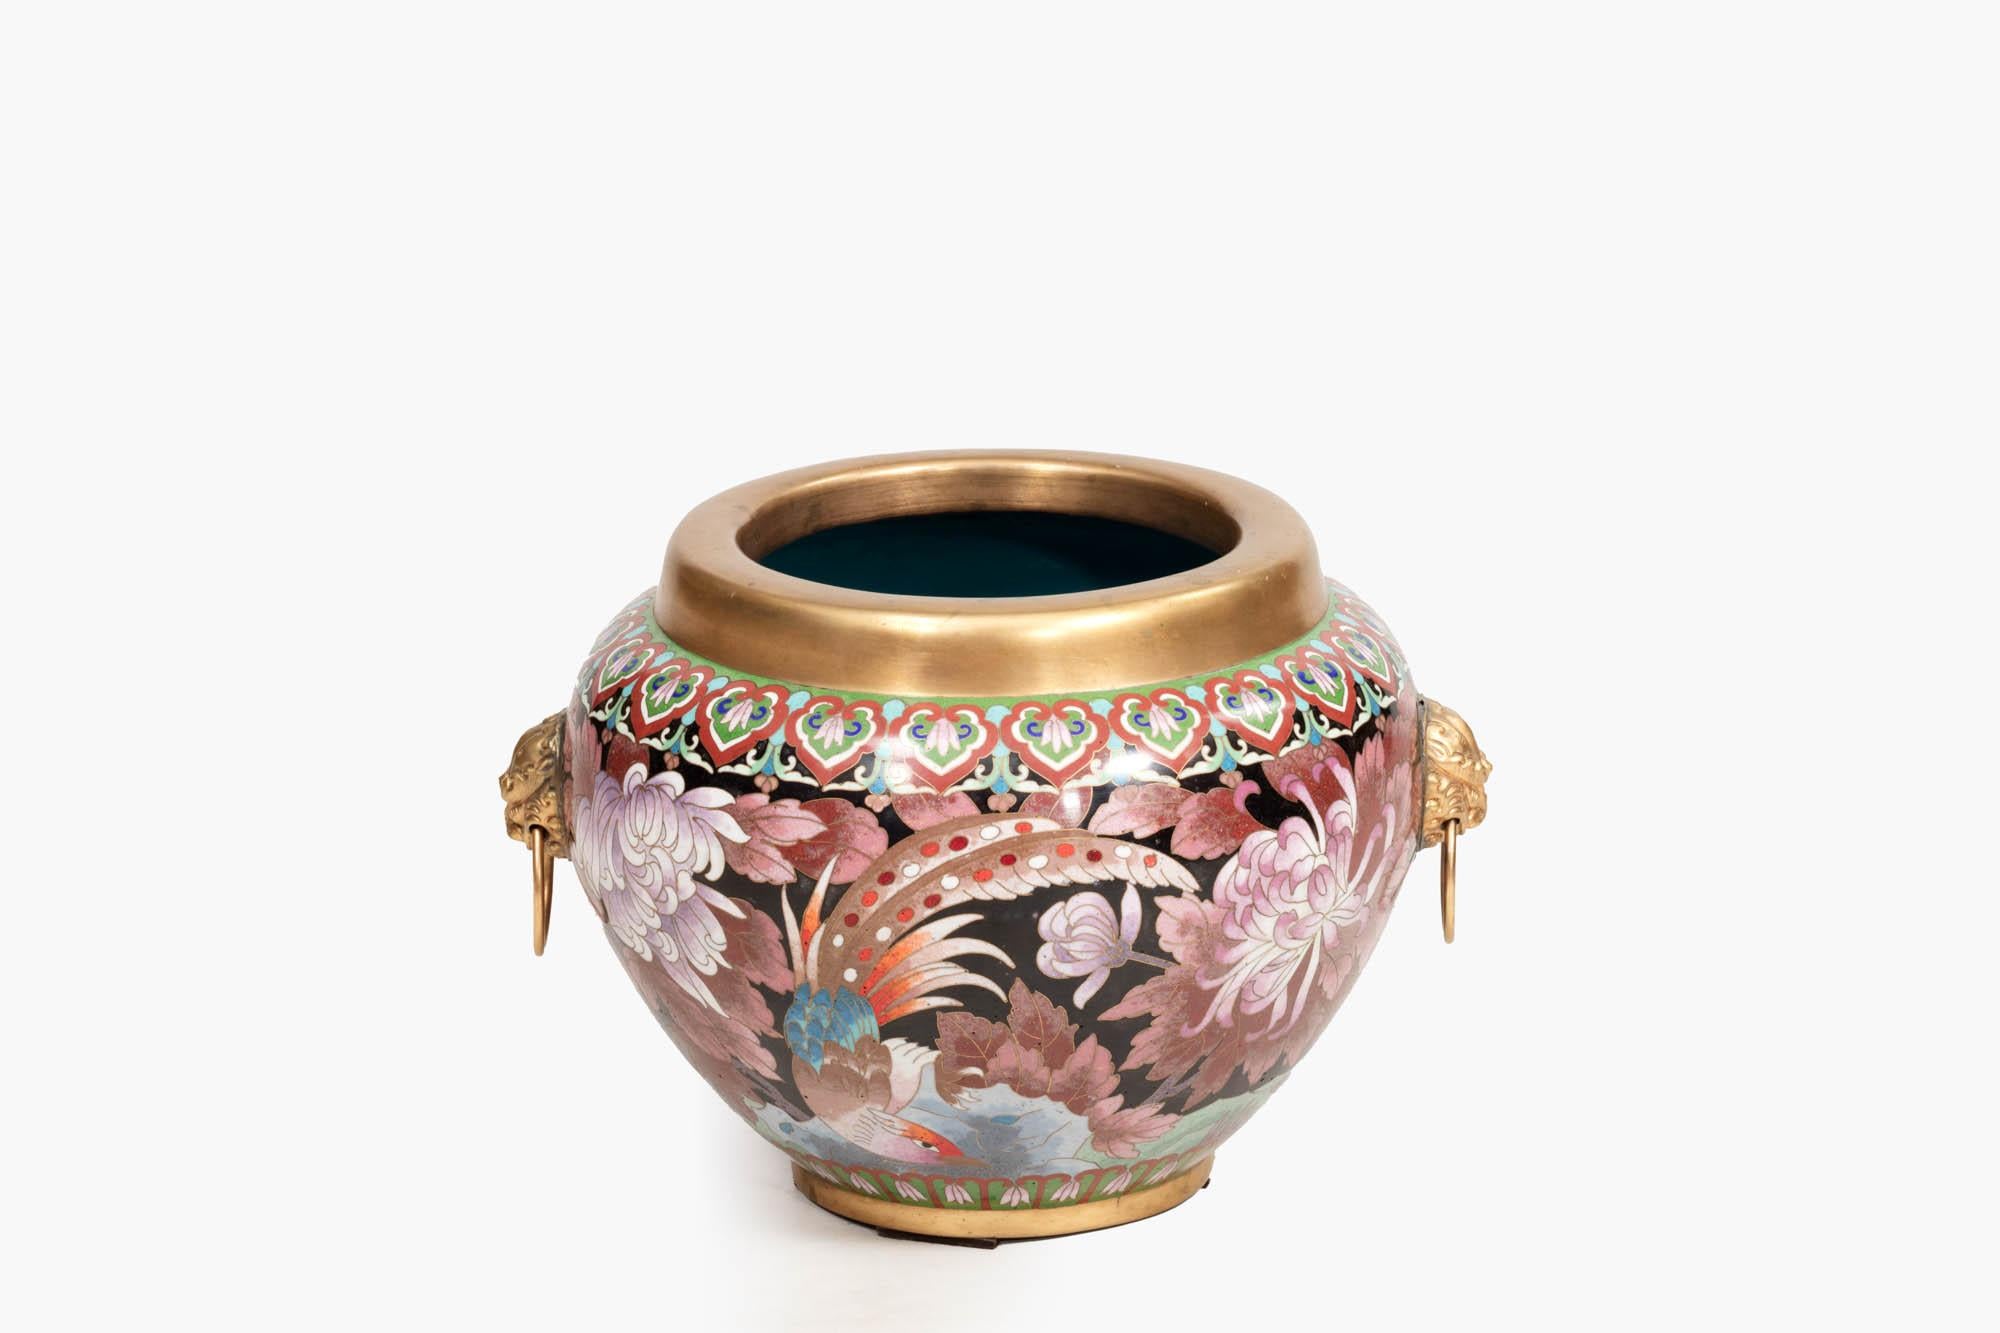 Cloisonné-Vase aus dem 19. Jahrhundert, reich verziert mit hellen orientalischen Mustern, Chrysanthemenblüten und Vögeln. Sie ist mit einem Goldrand versehen und hat eine leuchtend blaue Innenseite. Zwei Seiten sind mit goldenen Löwenmaskenhenkeln